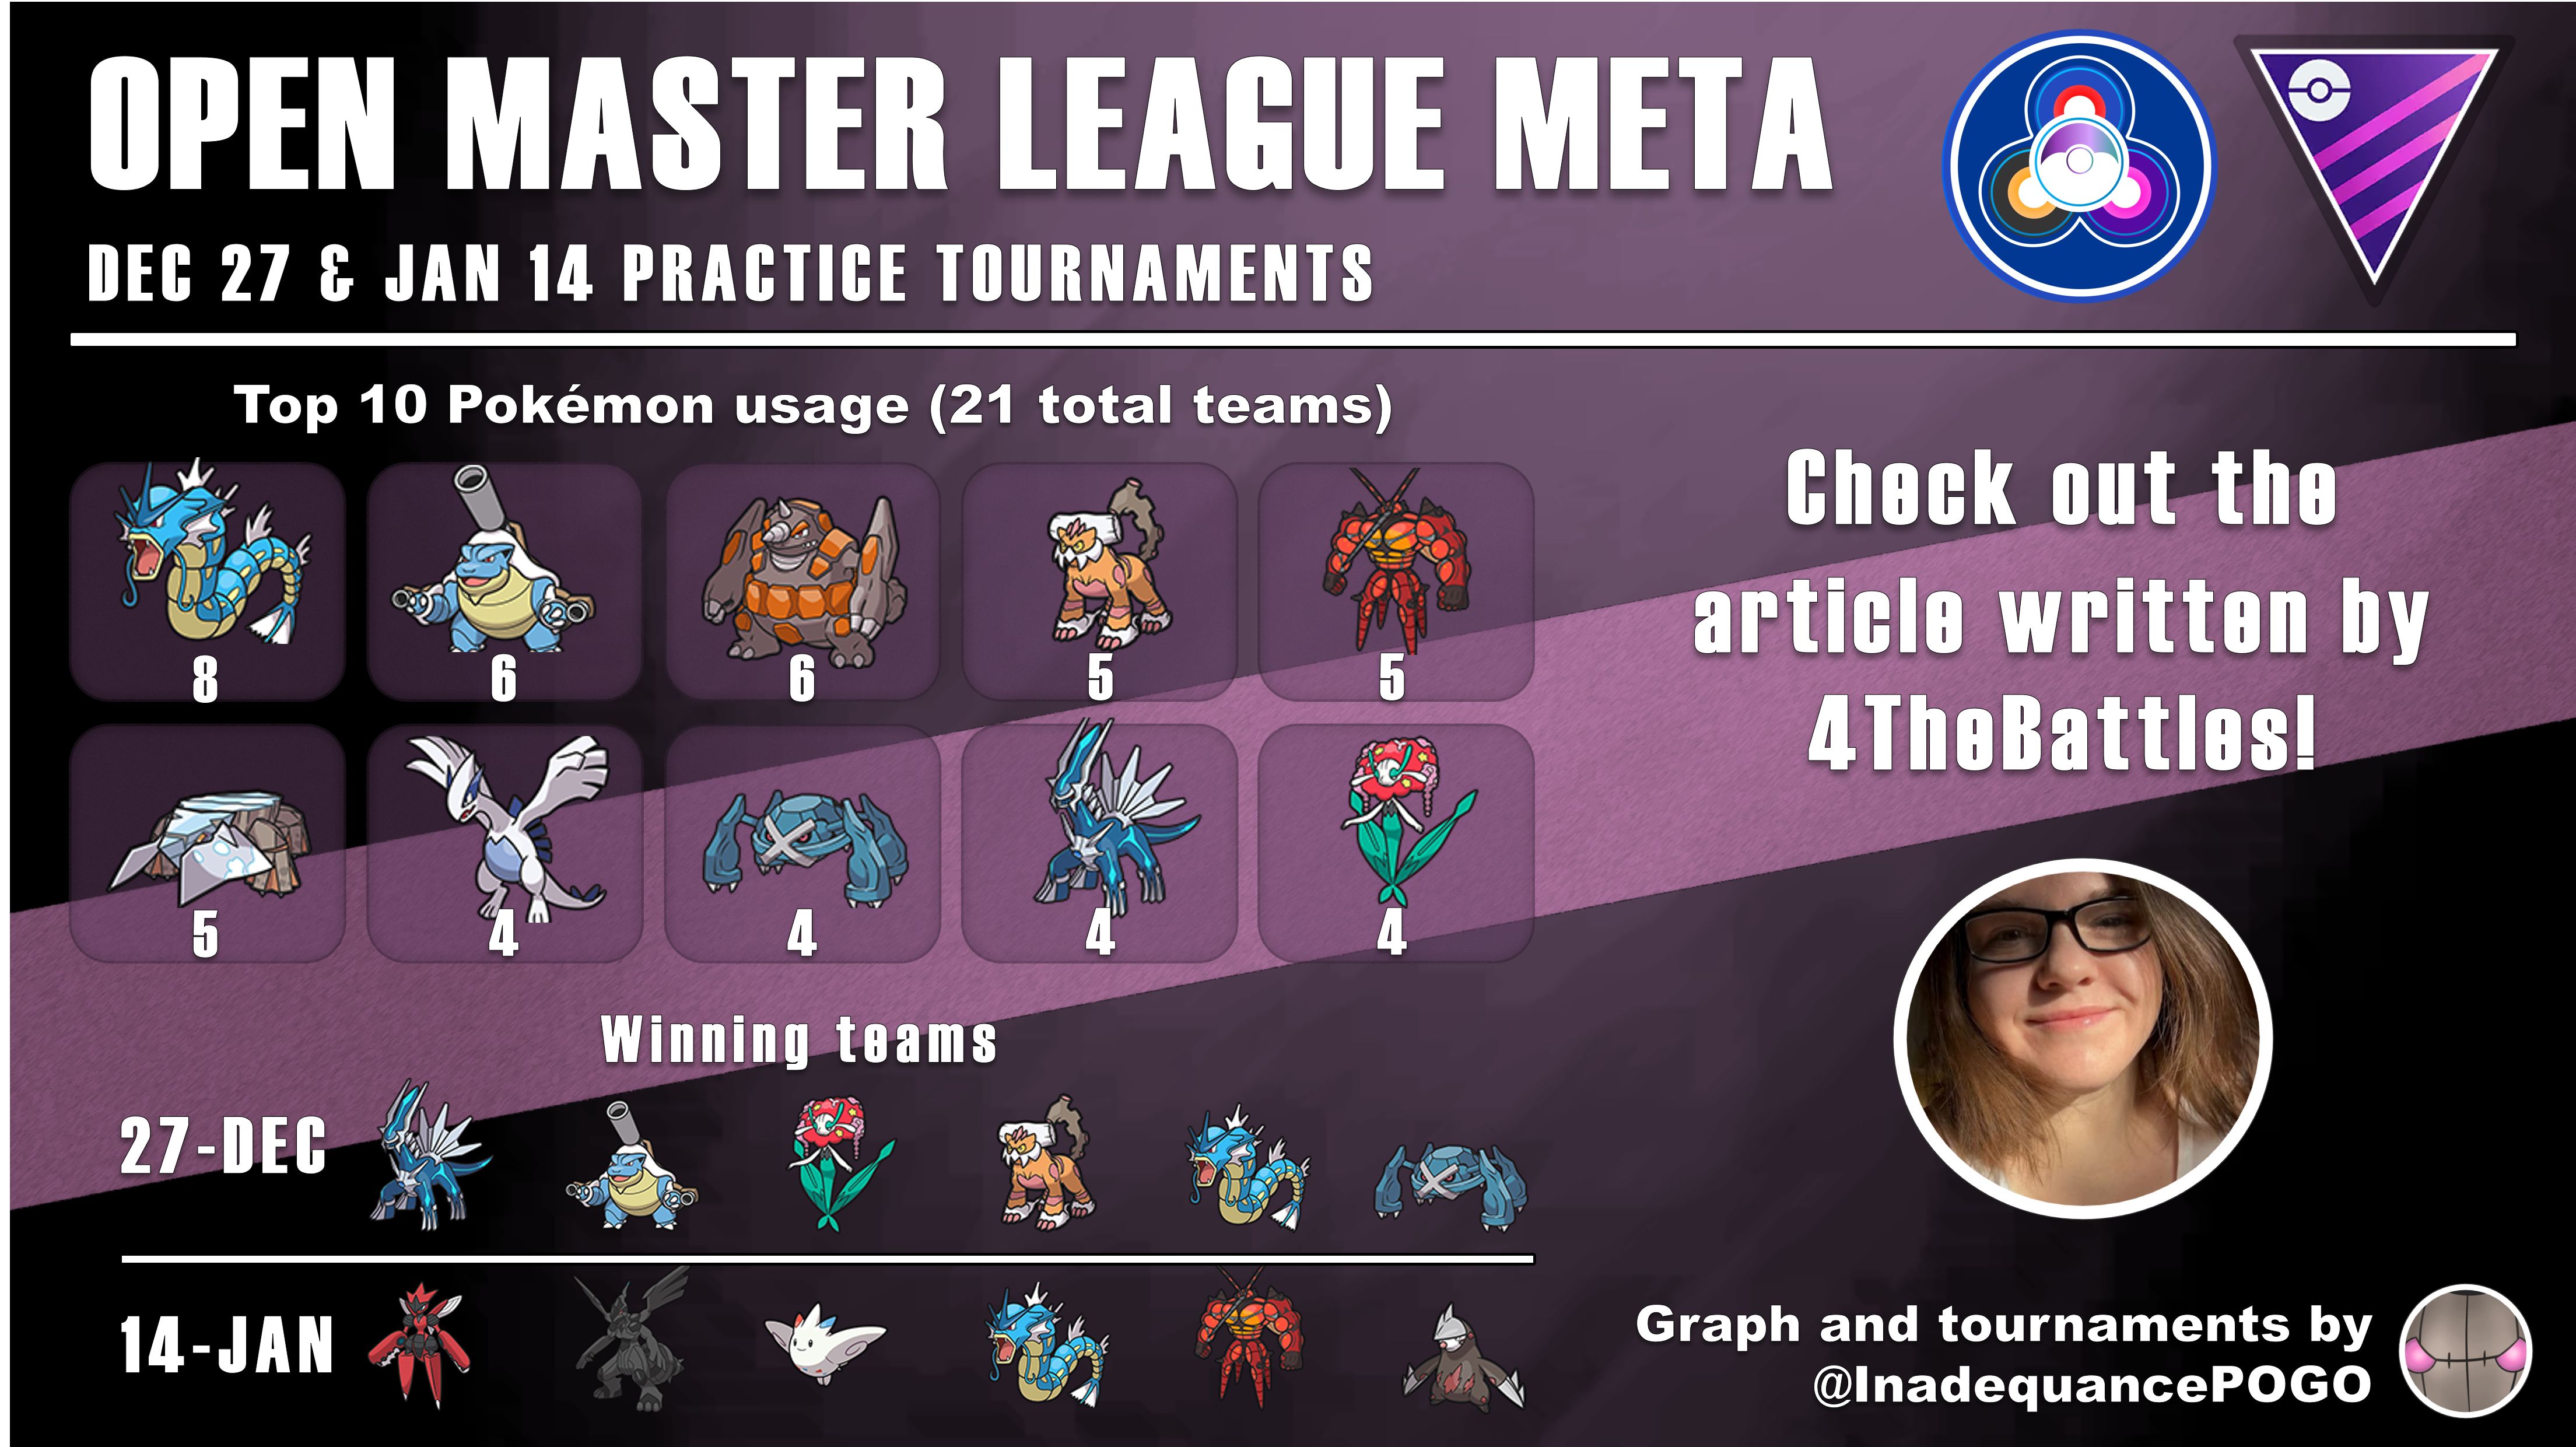 The Master League Meta